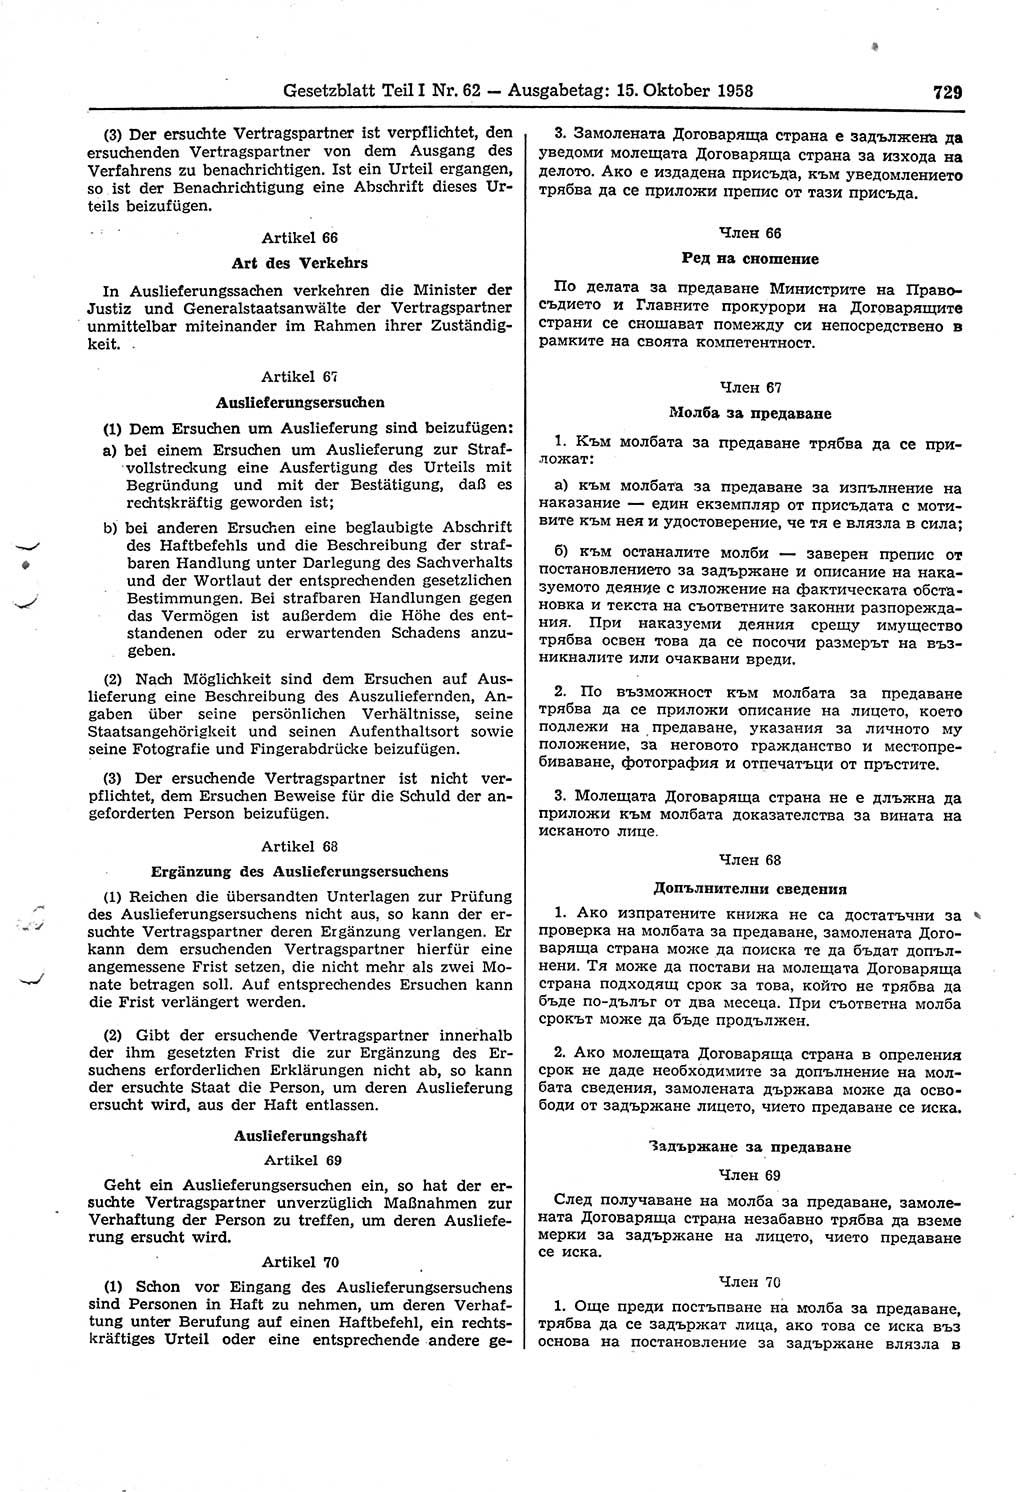 Gesetzblatt (GBl.) der Deutschen Demokratischen Republik (DDR) Teil Ⅰ 1958, Seite 729 (GBl. DDR Ⅰ 1958, S. 729)